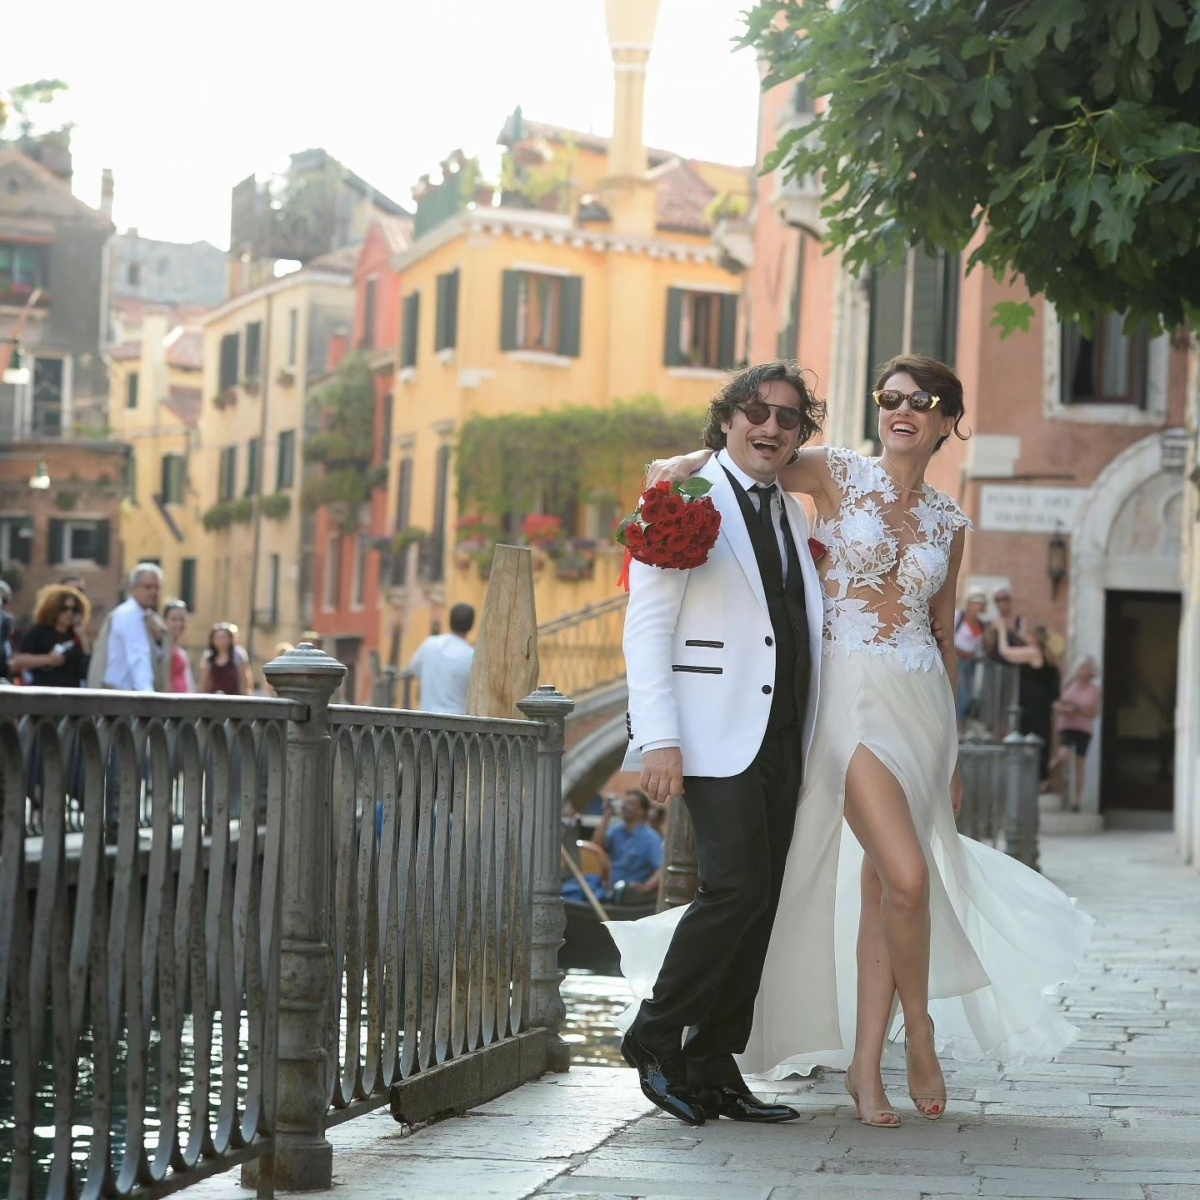 Παραμυθένιος γάμος στη Βενετία: Φωτογραφίες | Επέτειος του Βασίλη Χαραλαμπόπουλου και της Λίνας Πρίντζου